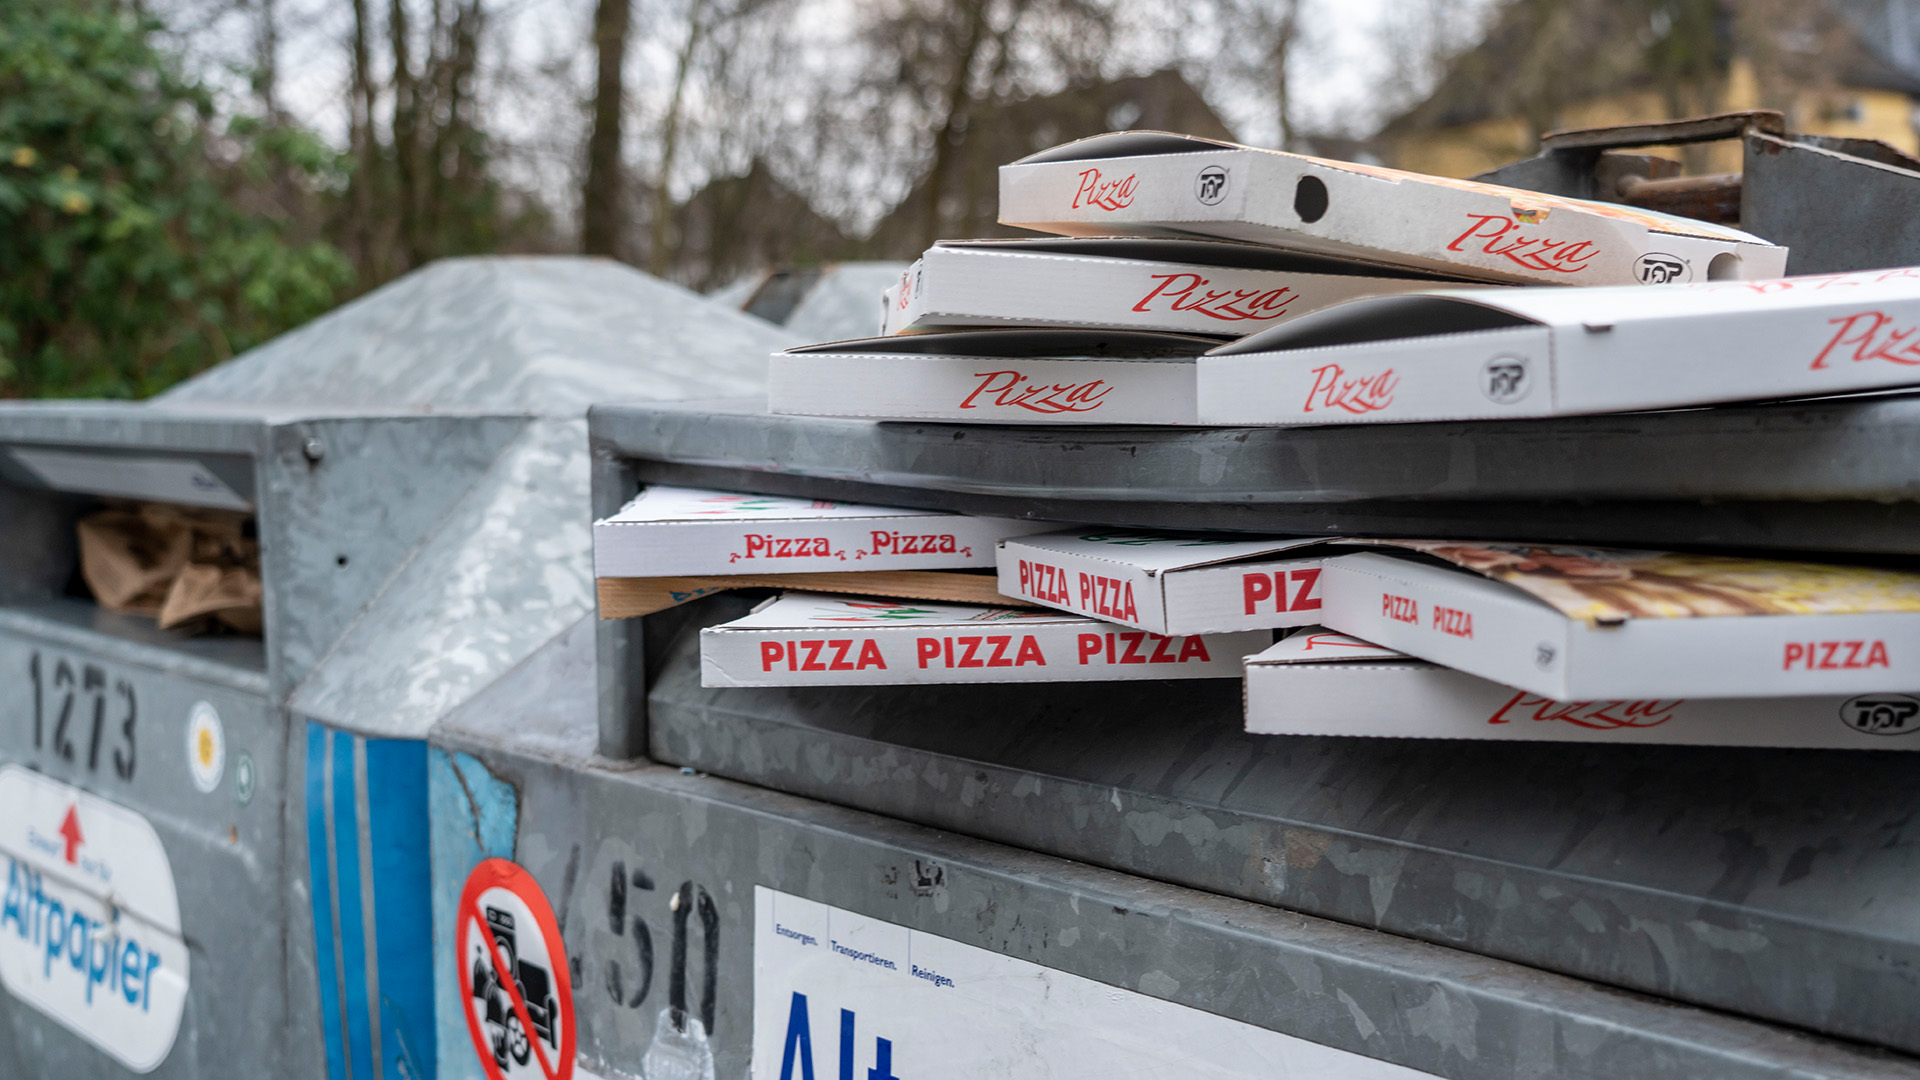 Pizzakartons liegen auf einem Altpapiercontainer. | picture alliance / Jochen Tack